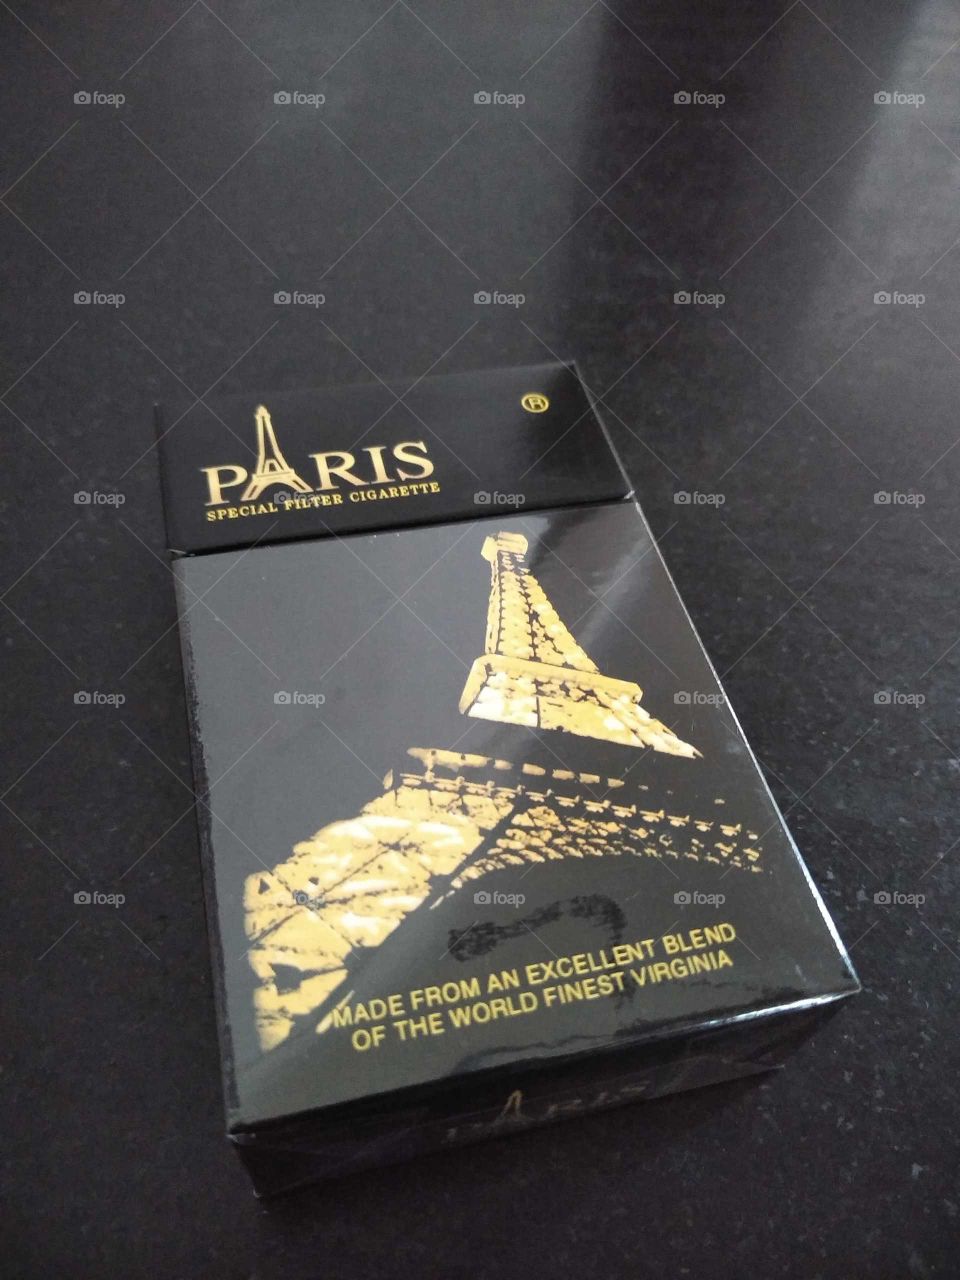 Paris cigarettes